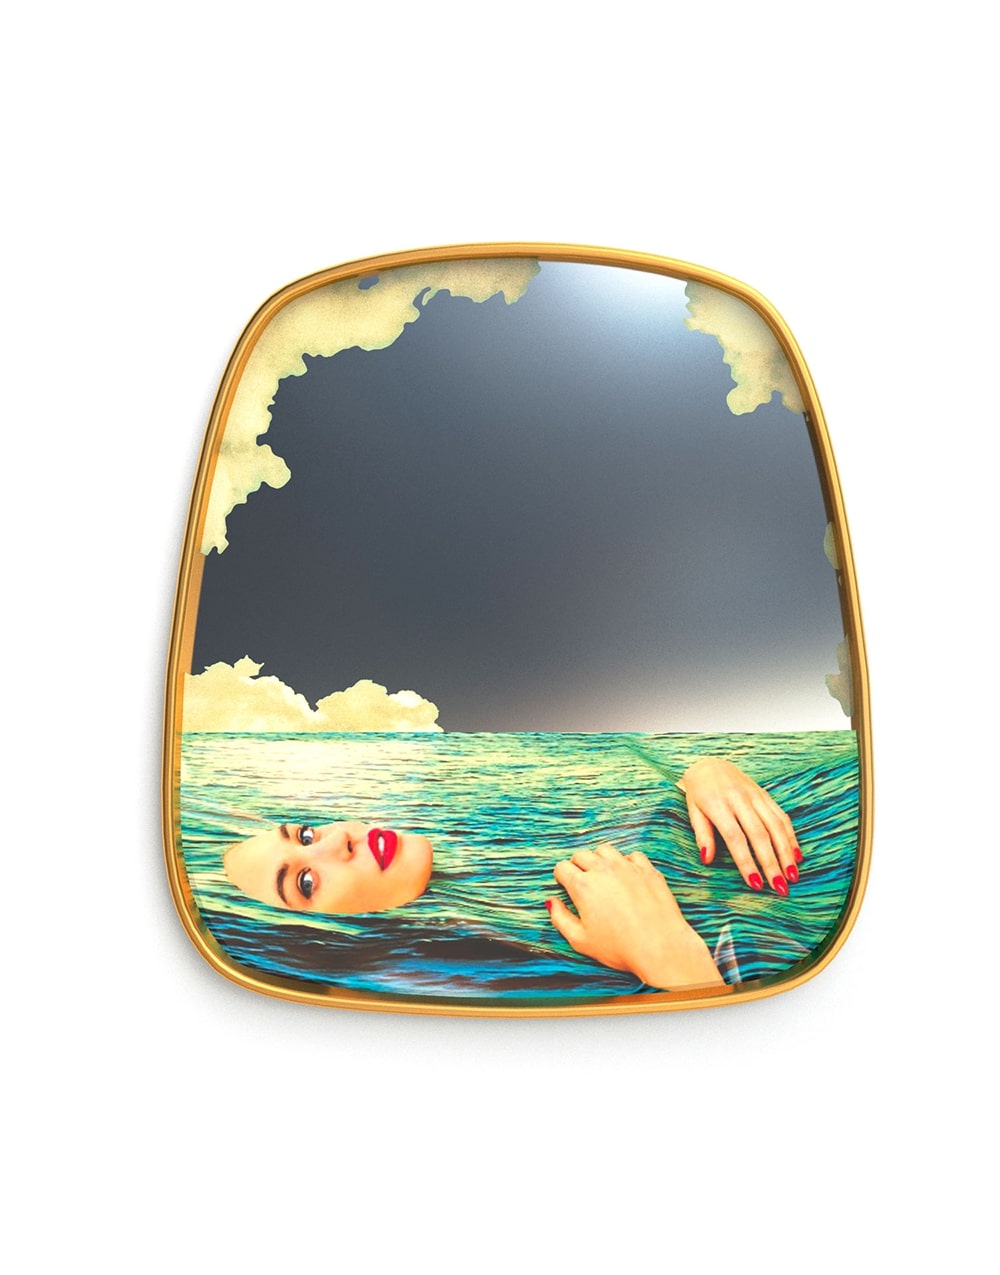 Mirror Gold Frame Sea Girl, Mirror Gold Frame Sea Girl